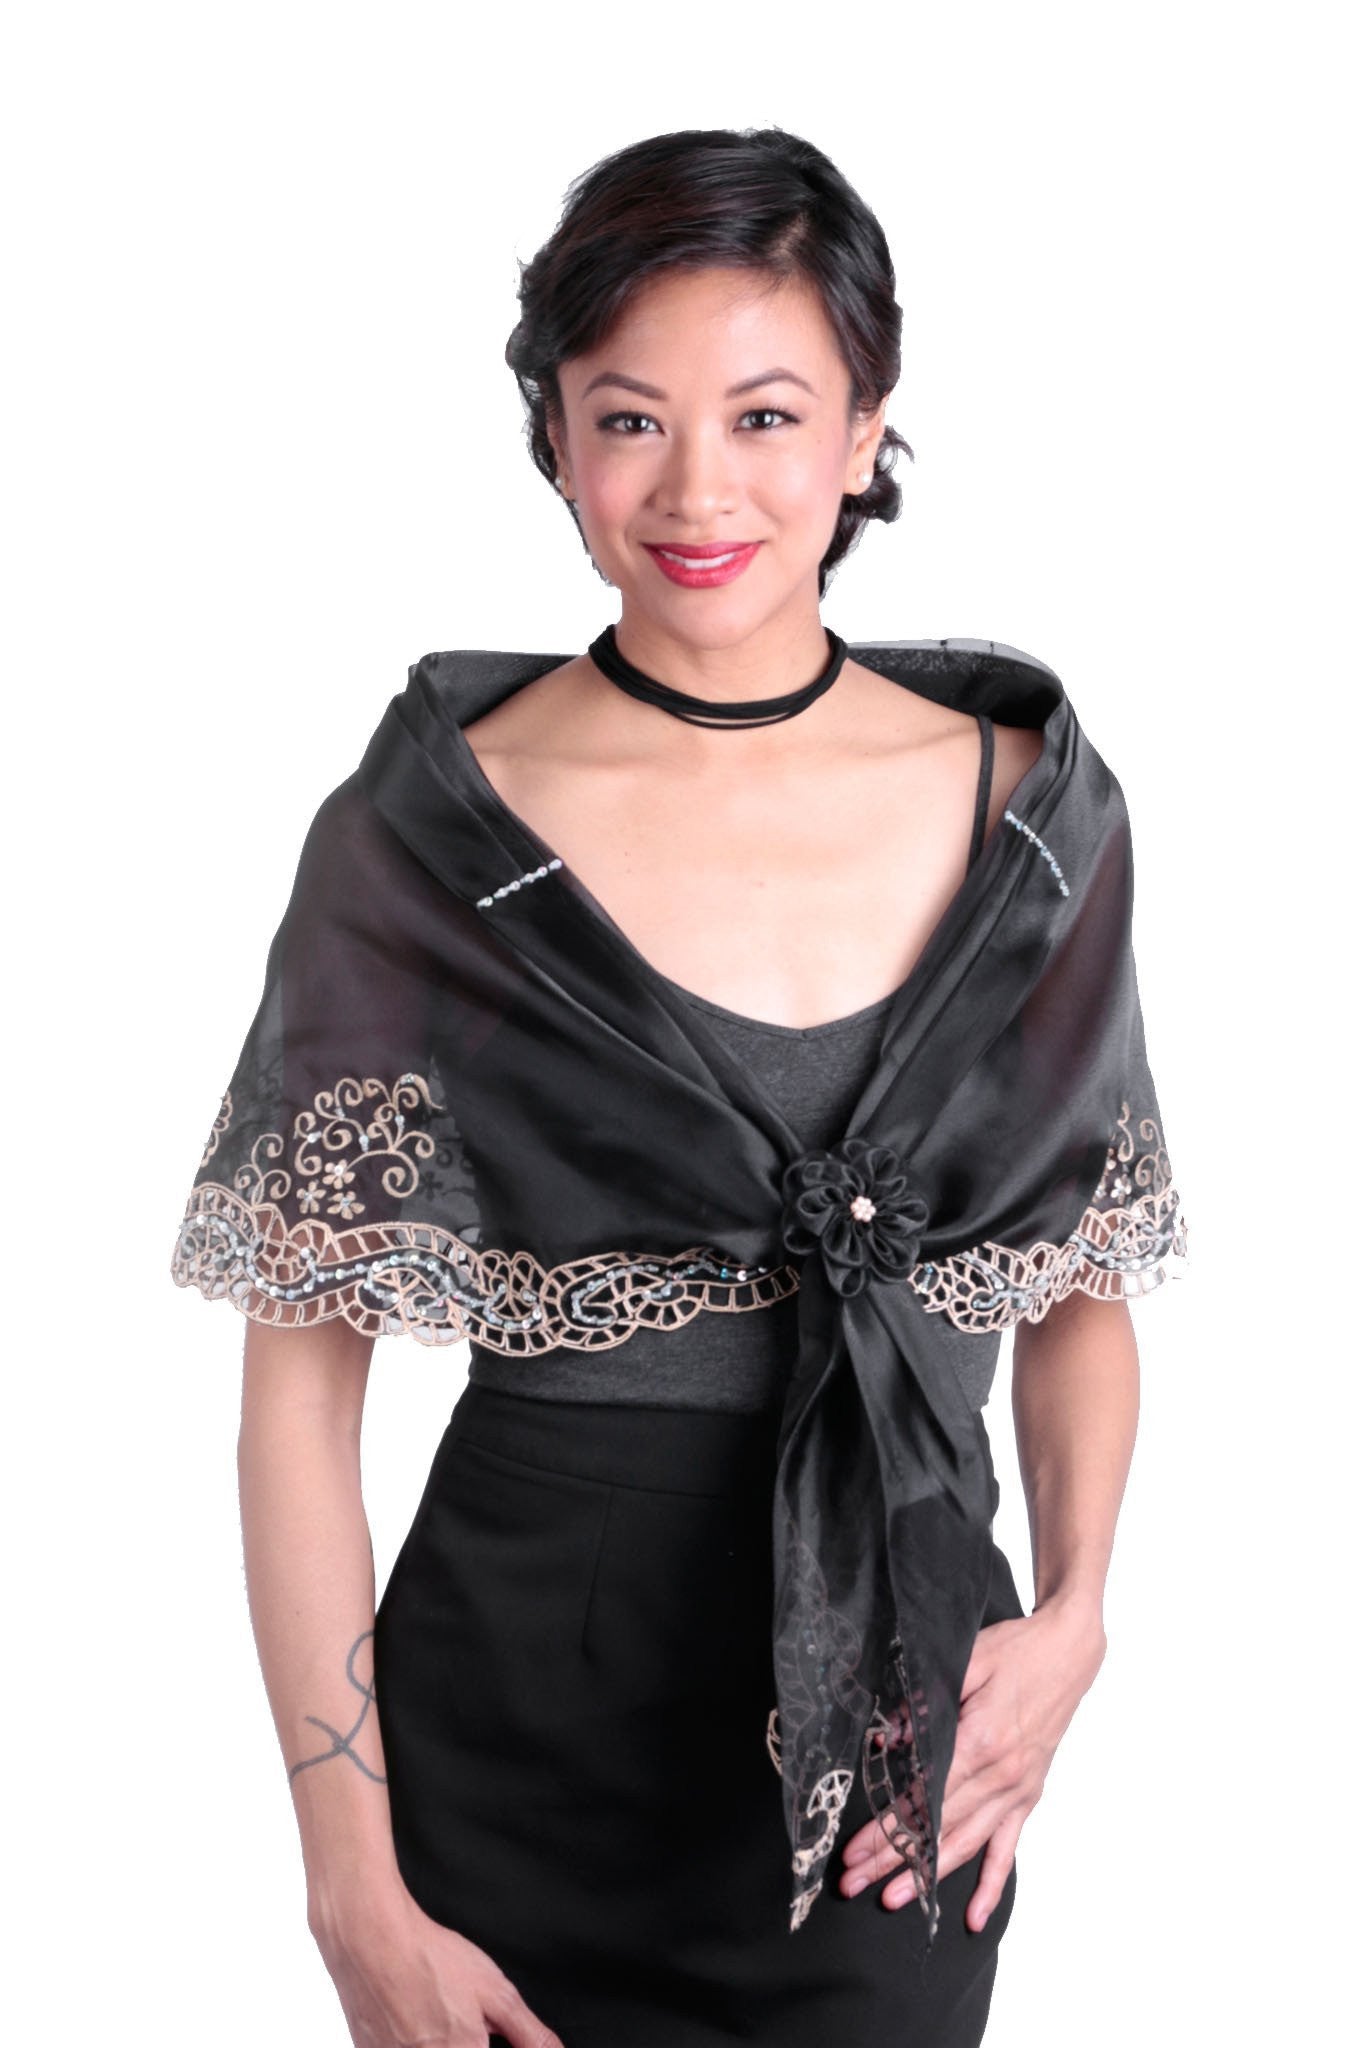 filipiniana dress black